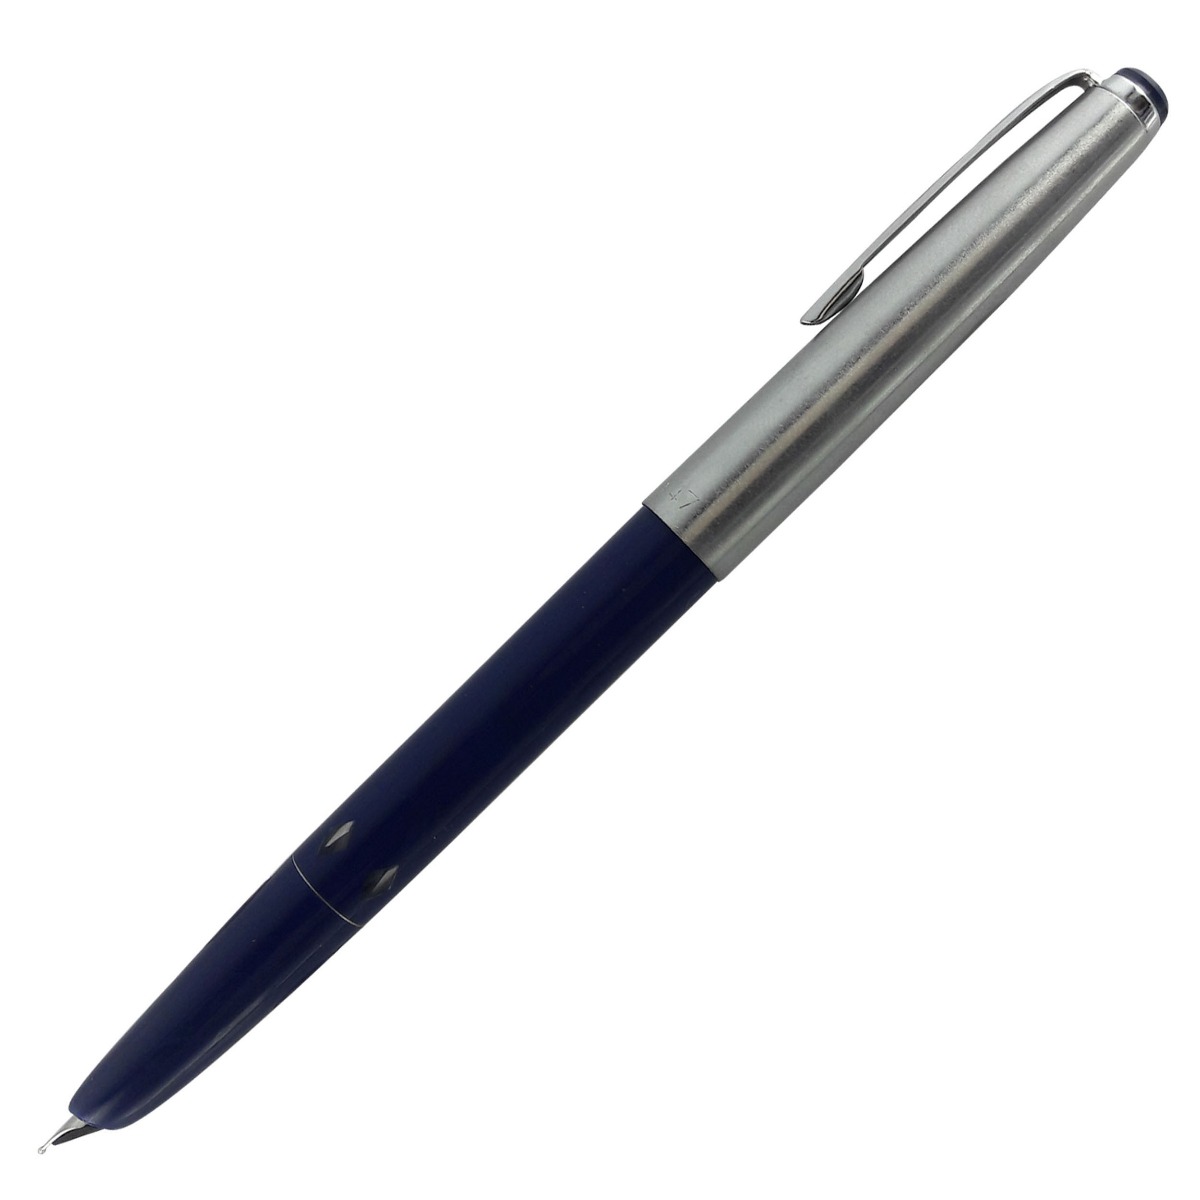  Camlin 47 Blue Color Body with Silver Clip Medium Nib Piston Type Fountain Pen SKU 12313